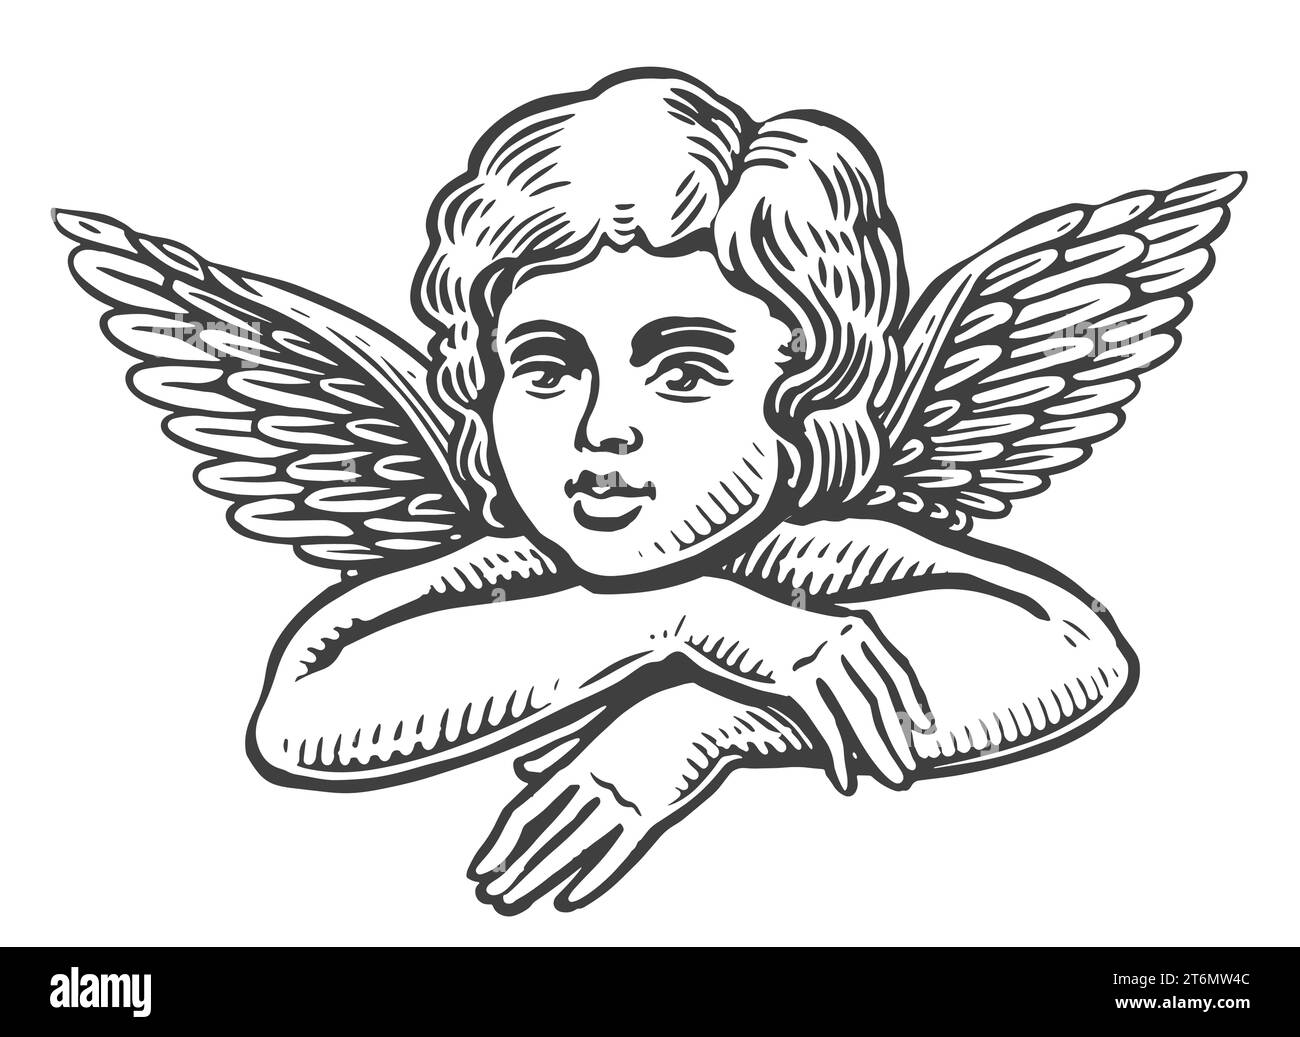 Kleiner Engel, Vintage-Gravur. Niedliches Baby mit Flügeln, schwarz-weiße Vektorillustration Stock Vektor